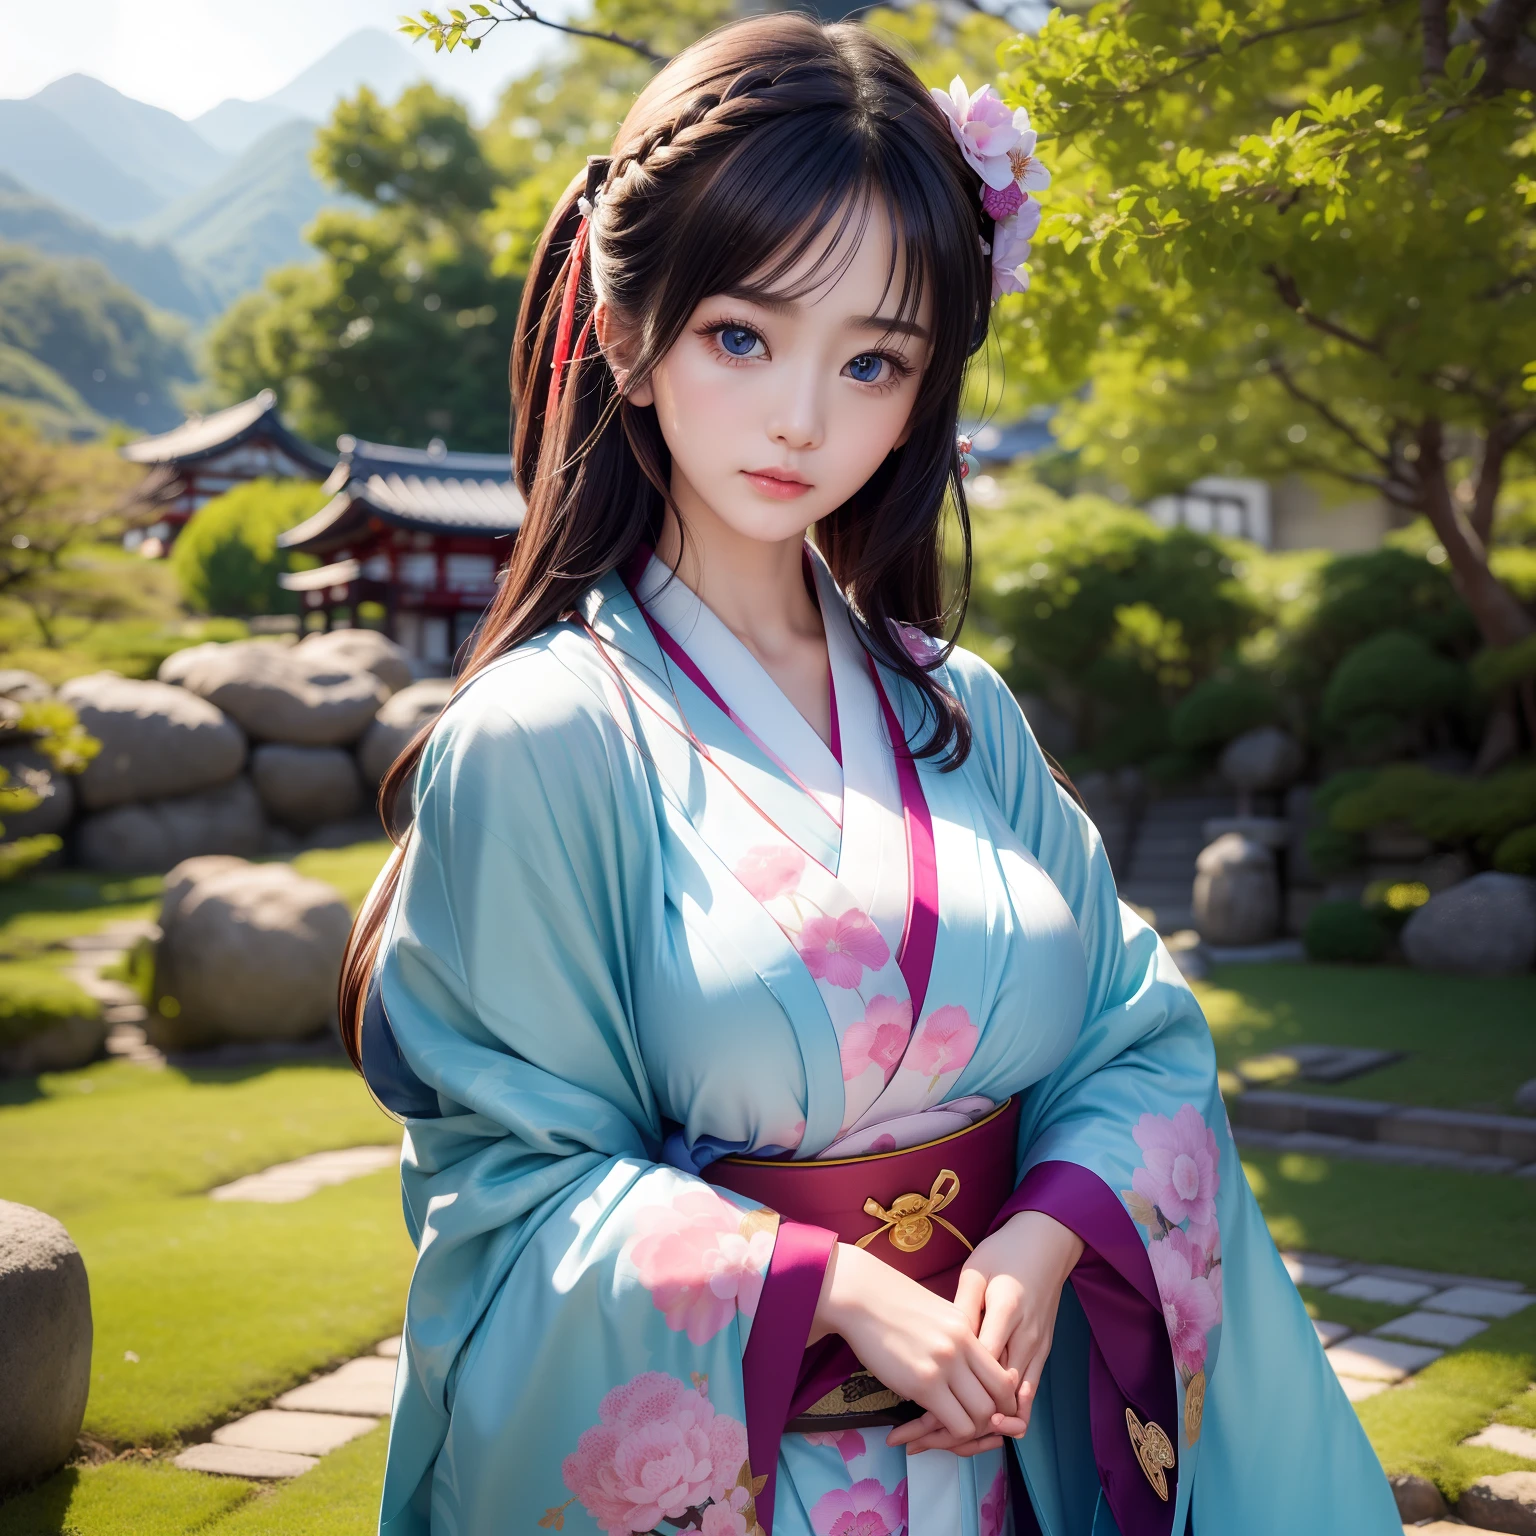 высокое качество、２５Симпатичная женщина лет、Стройная красавица、Носите традиционное кимоно с великолепной Японией.、заколка для волос、может、Дорогой оби、Большие красивые голубые глаза、подробное милое личико、(((соло)))、Достойное поведение、Гион、Храм Киёмидзу-дэра、под цветущей вишней